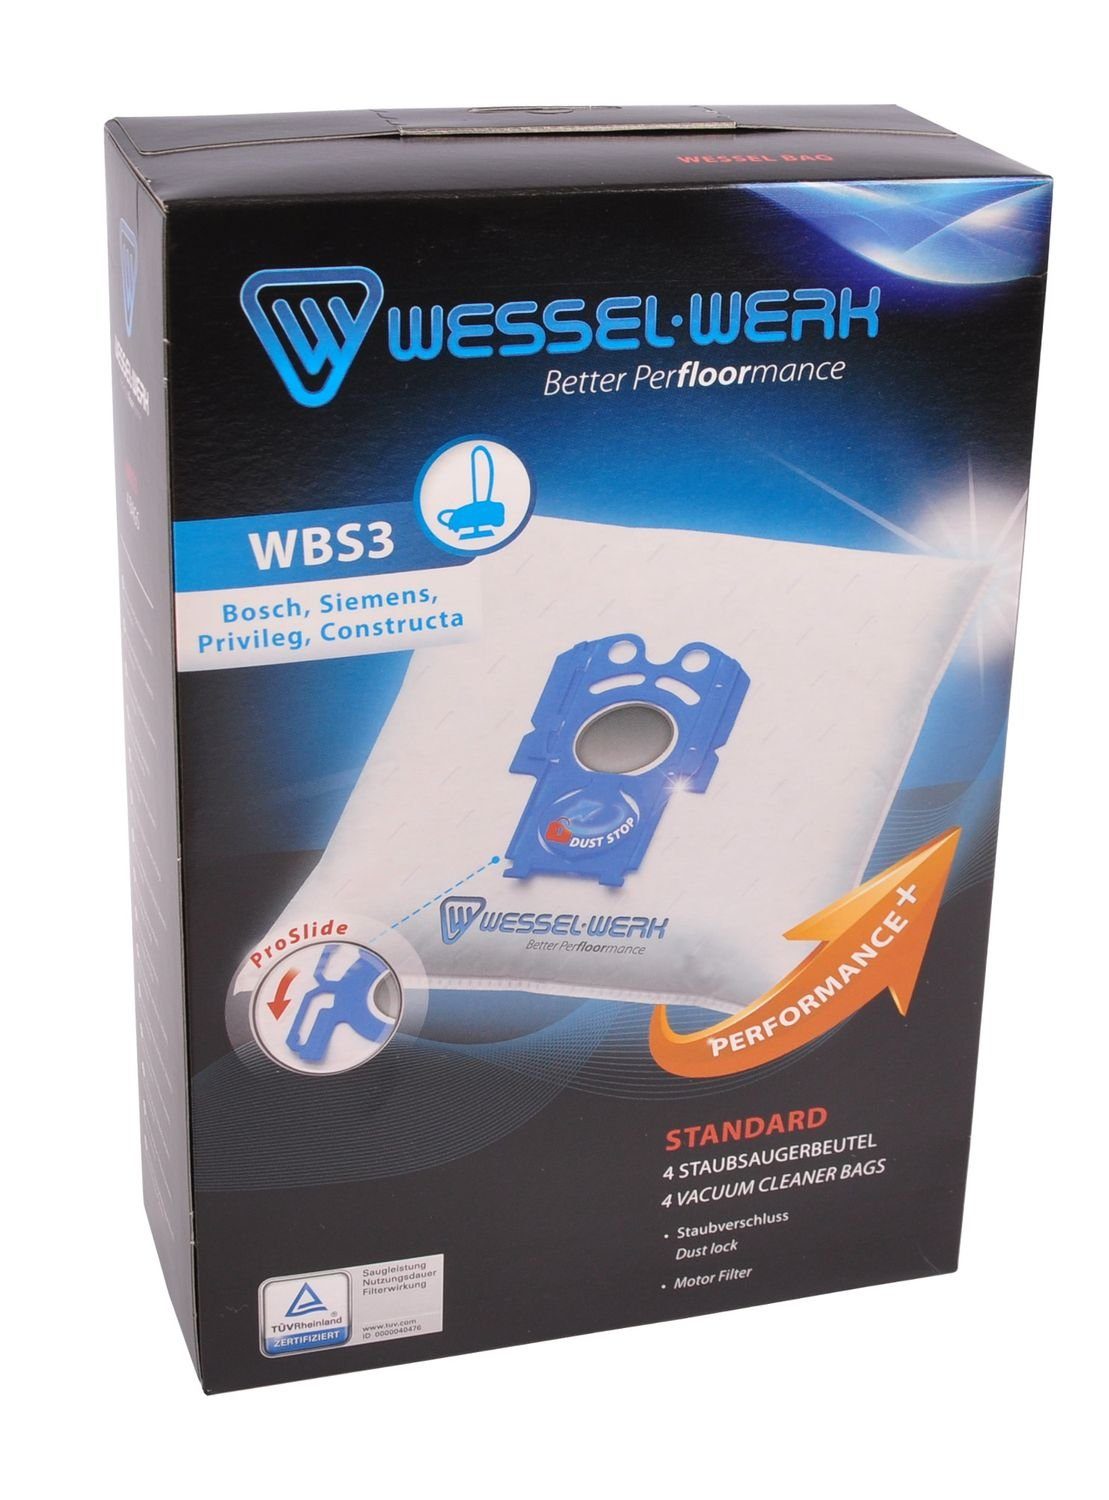 für Staubsaugerbeutel Siemens Wessel-Werk x,WBS3 Swirl S71 Privileg 4 = Bosch Cons Staubsaugerbeutel